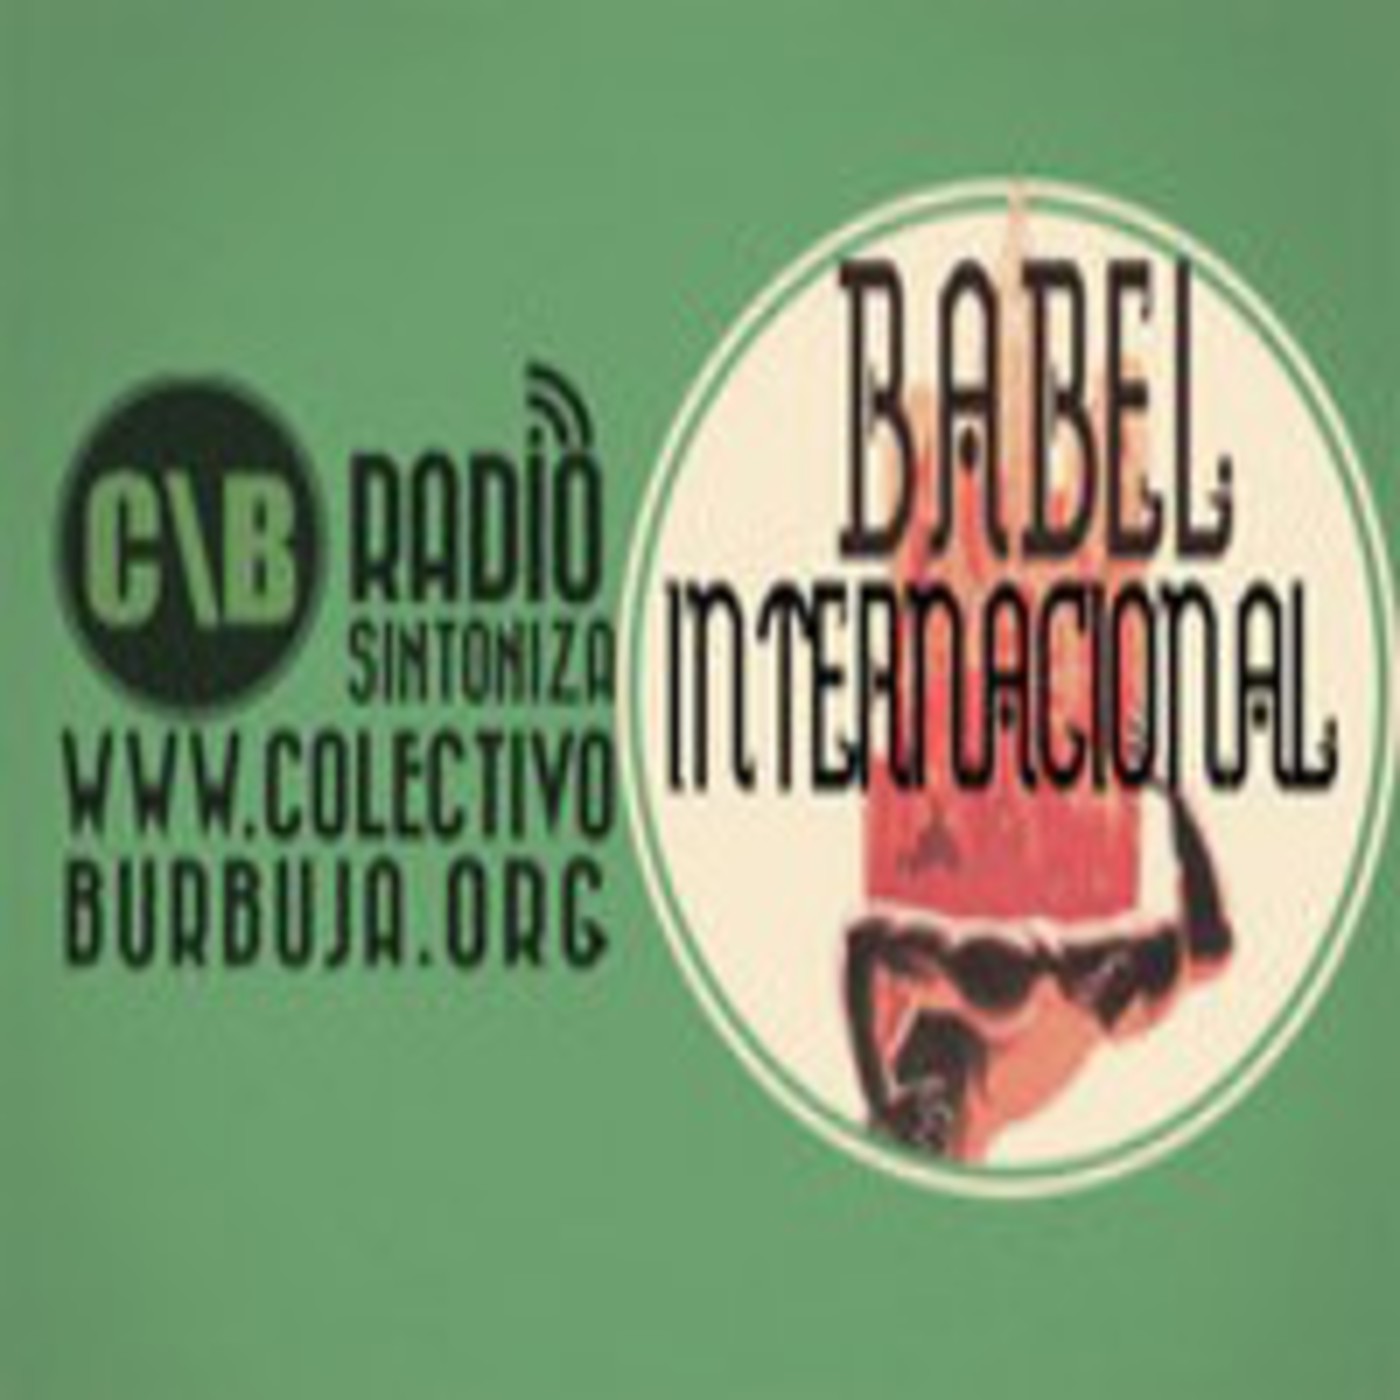 Babel Internaciona 03-06-2012 Rajoy vende España al mejor postor